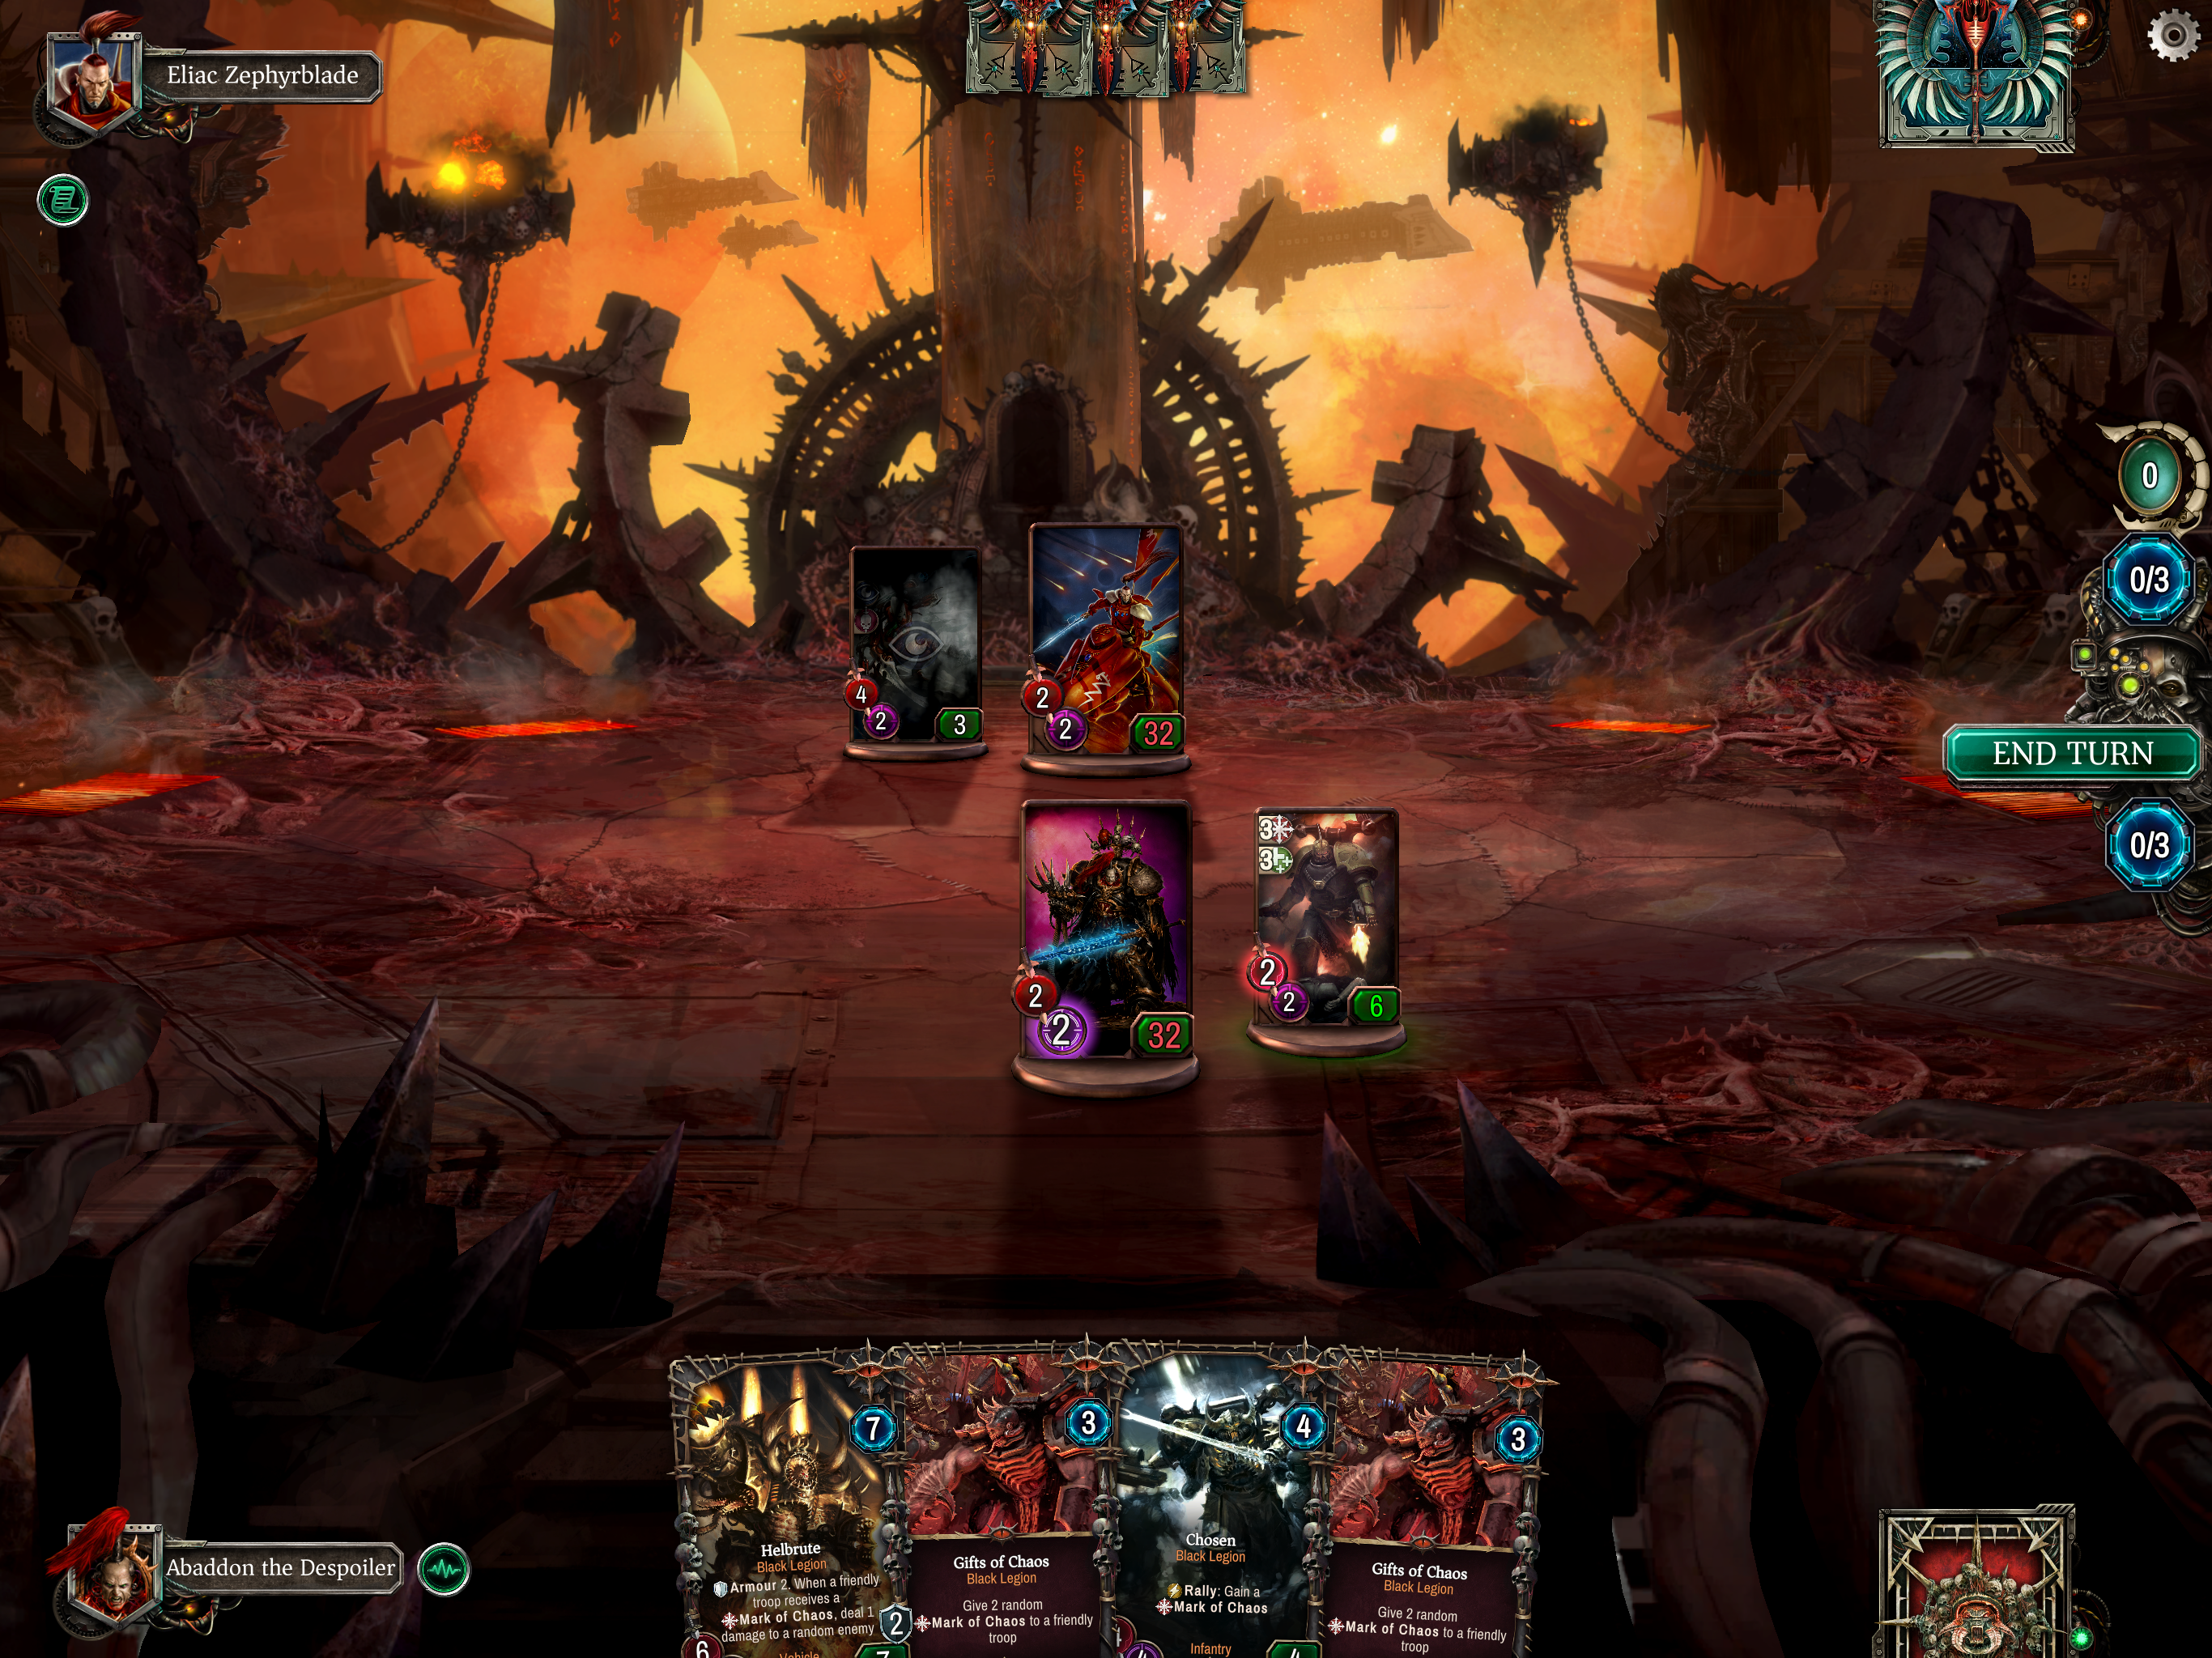 Screenshot from Warhammer 40,000: Warpforge of the Black Legion battle arena.